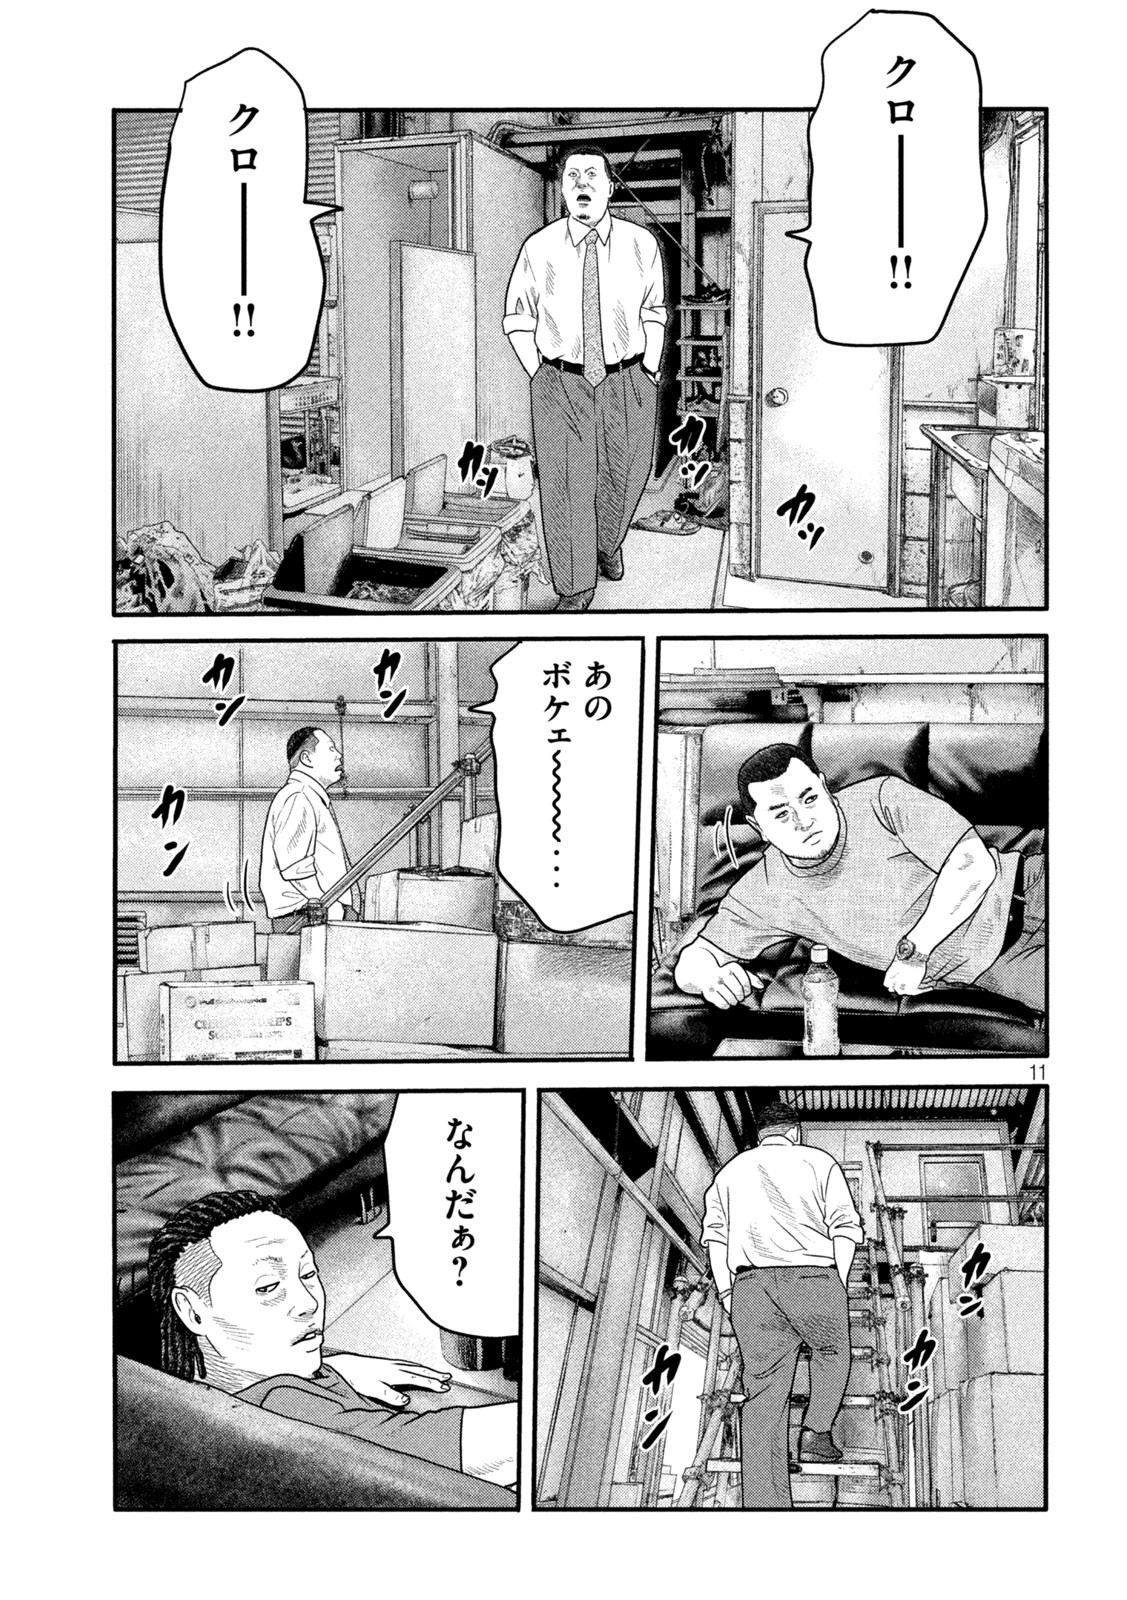 ザ・ファブル The Second Contact 第5話 - Page 11